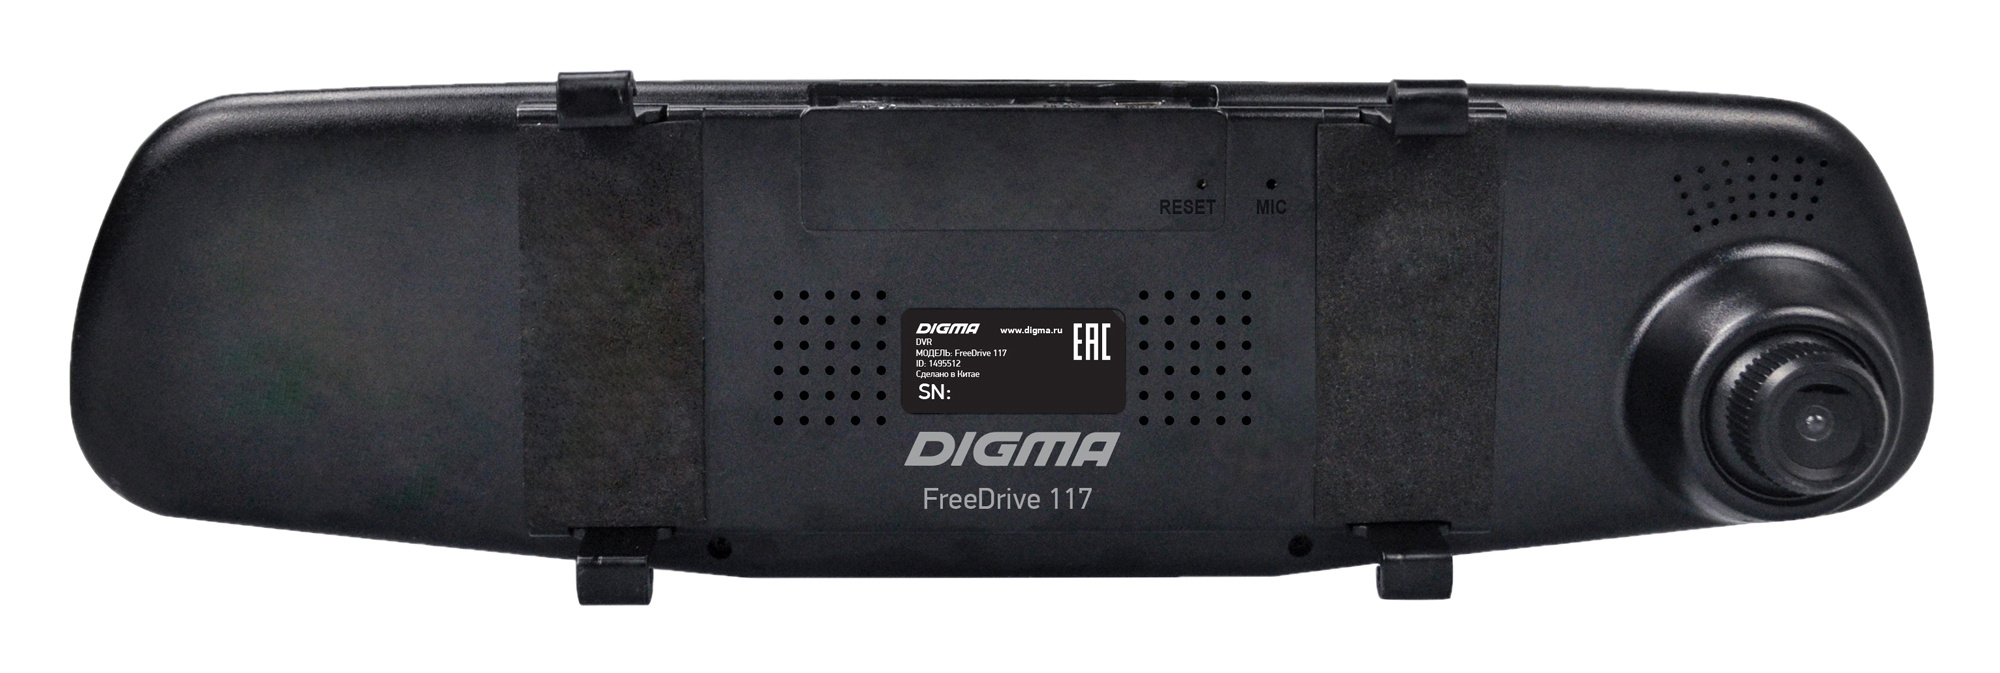 Видеорегистратор Digma FreeDrive 117, черный 